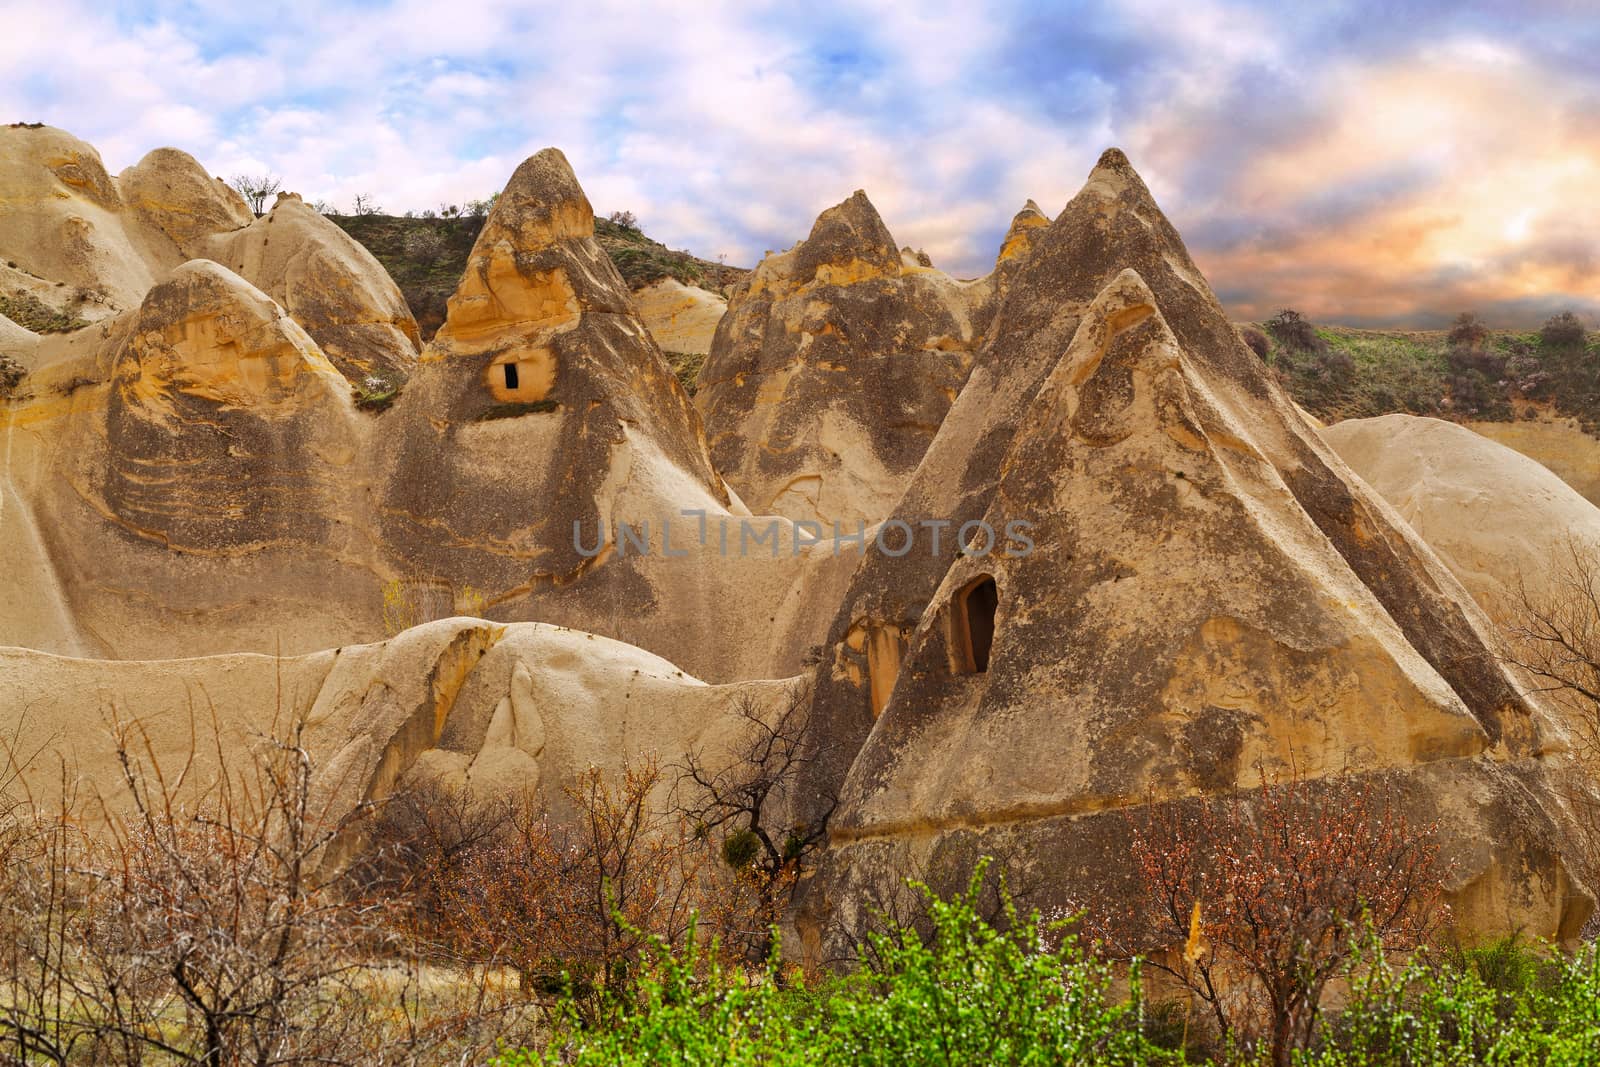 Beautiful stone cliffs in valley named Rose valley near Meskendir, Goreme, Turkey